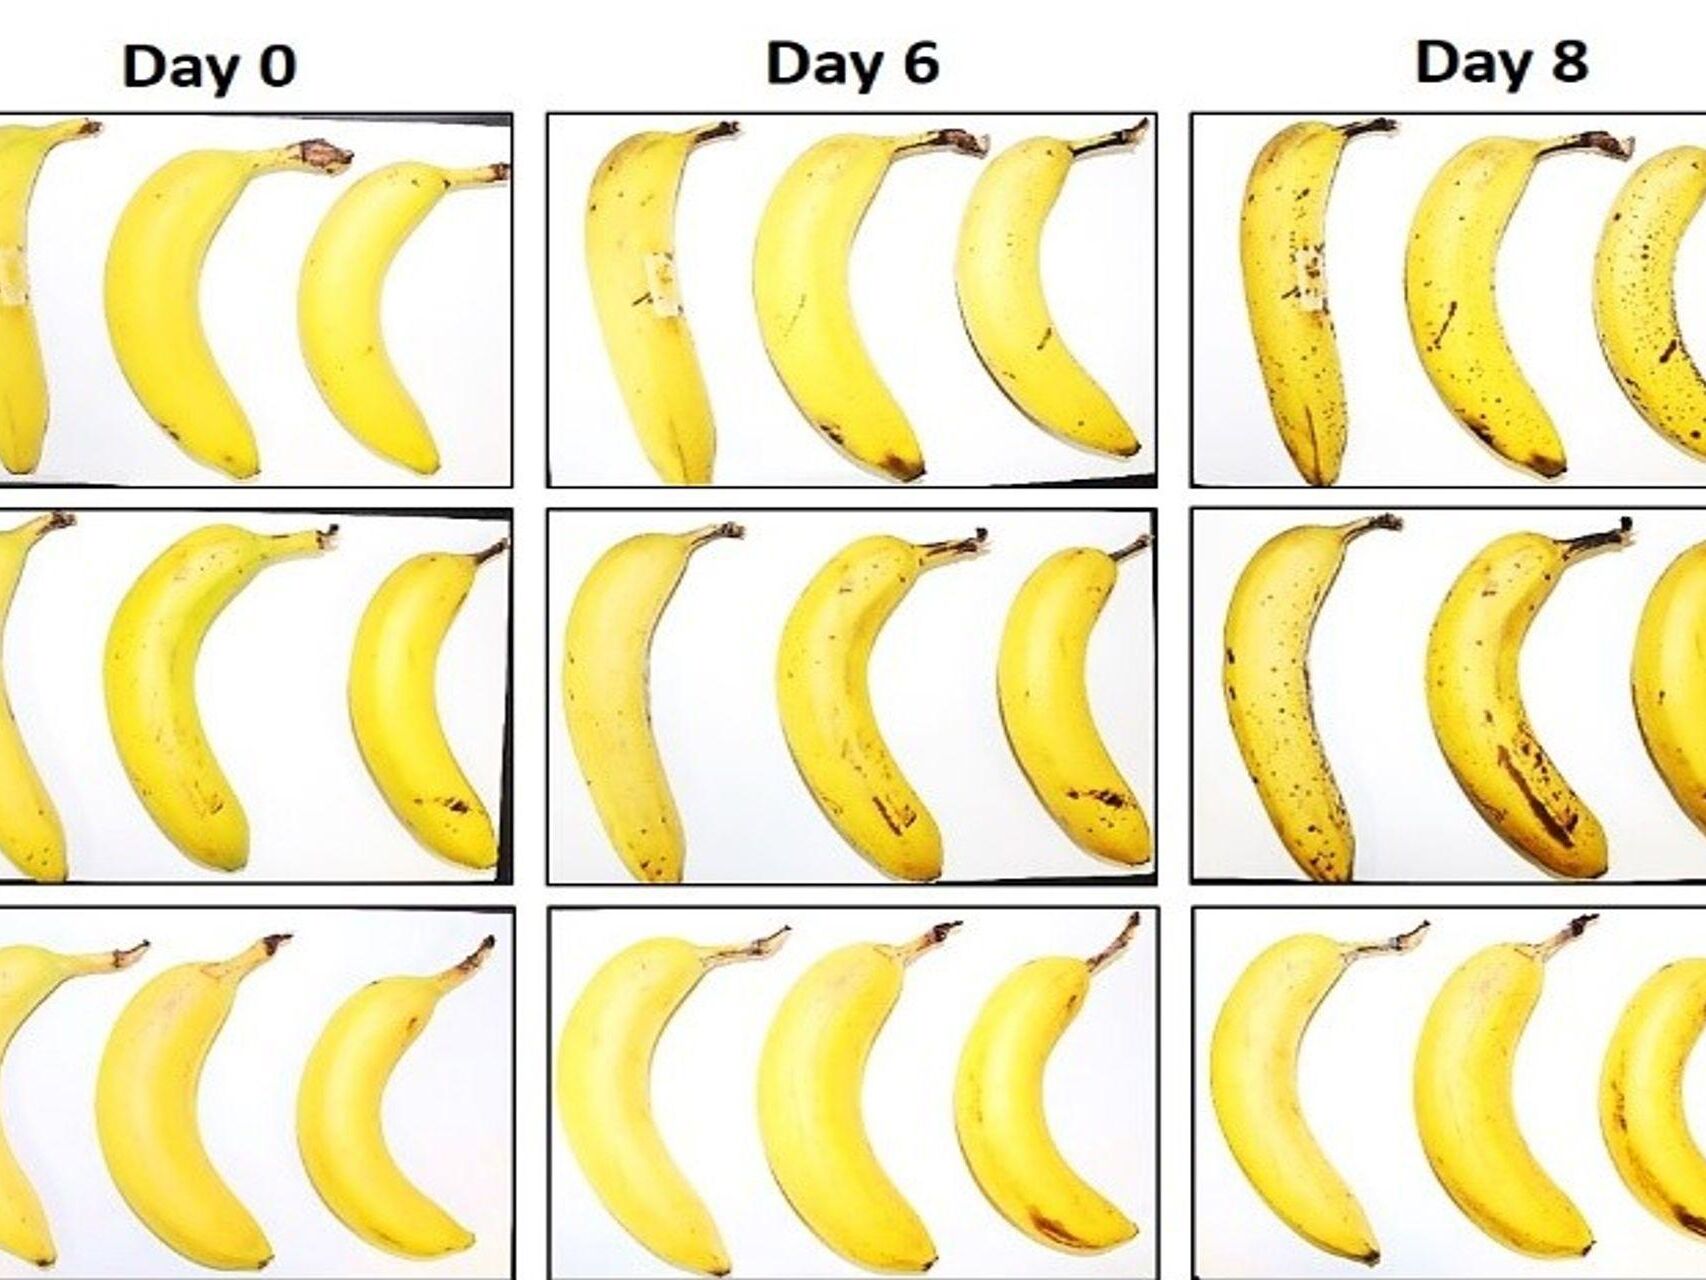 Trois bananes soumises par l'EMPA et Lidl Suisse au test de conservation avec et sans emballage en fibre de cellulose après zéro, 6 et 8 jours